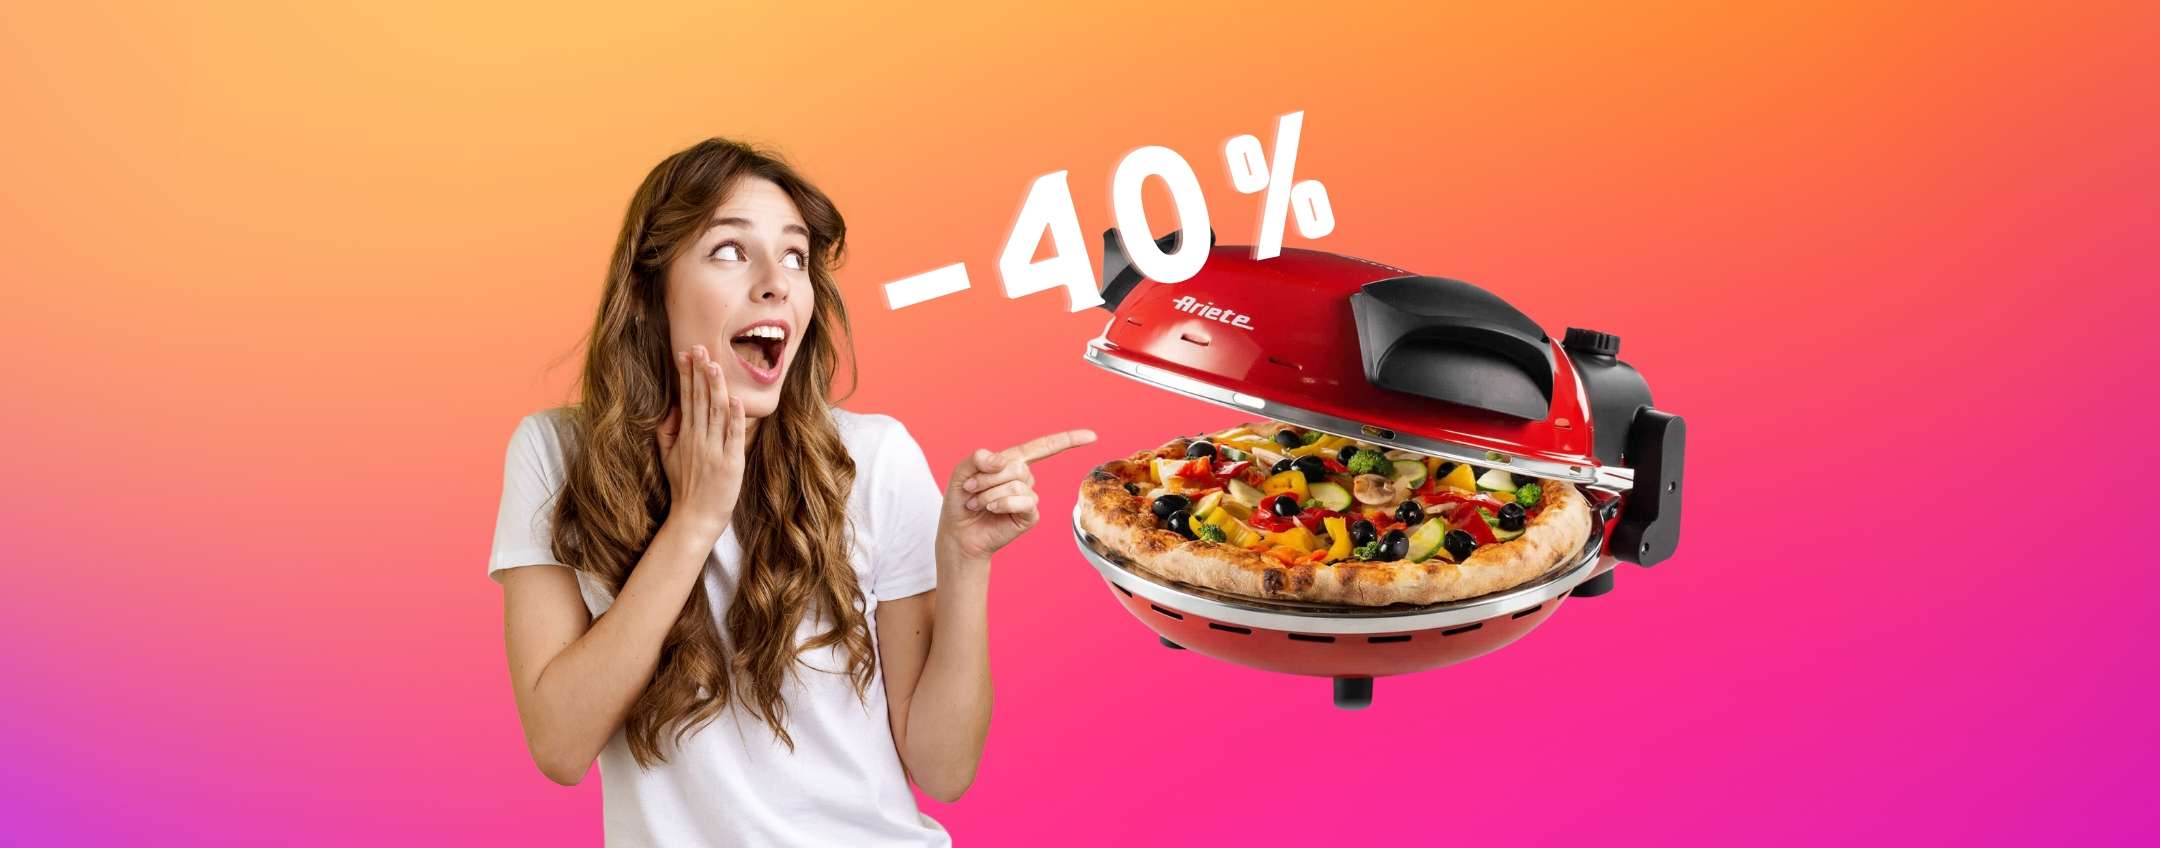 Ariete 909: la pizza in 4 minuti buona come in un forno a legna (-40%)